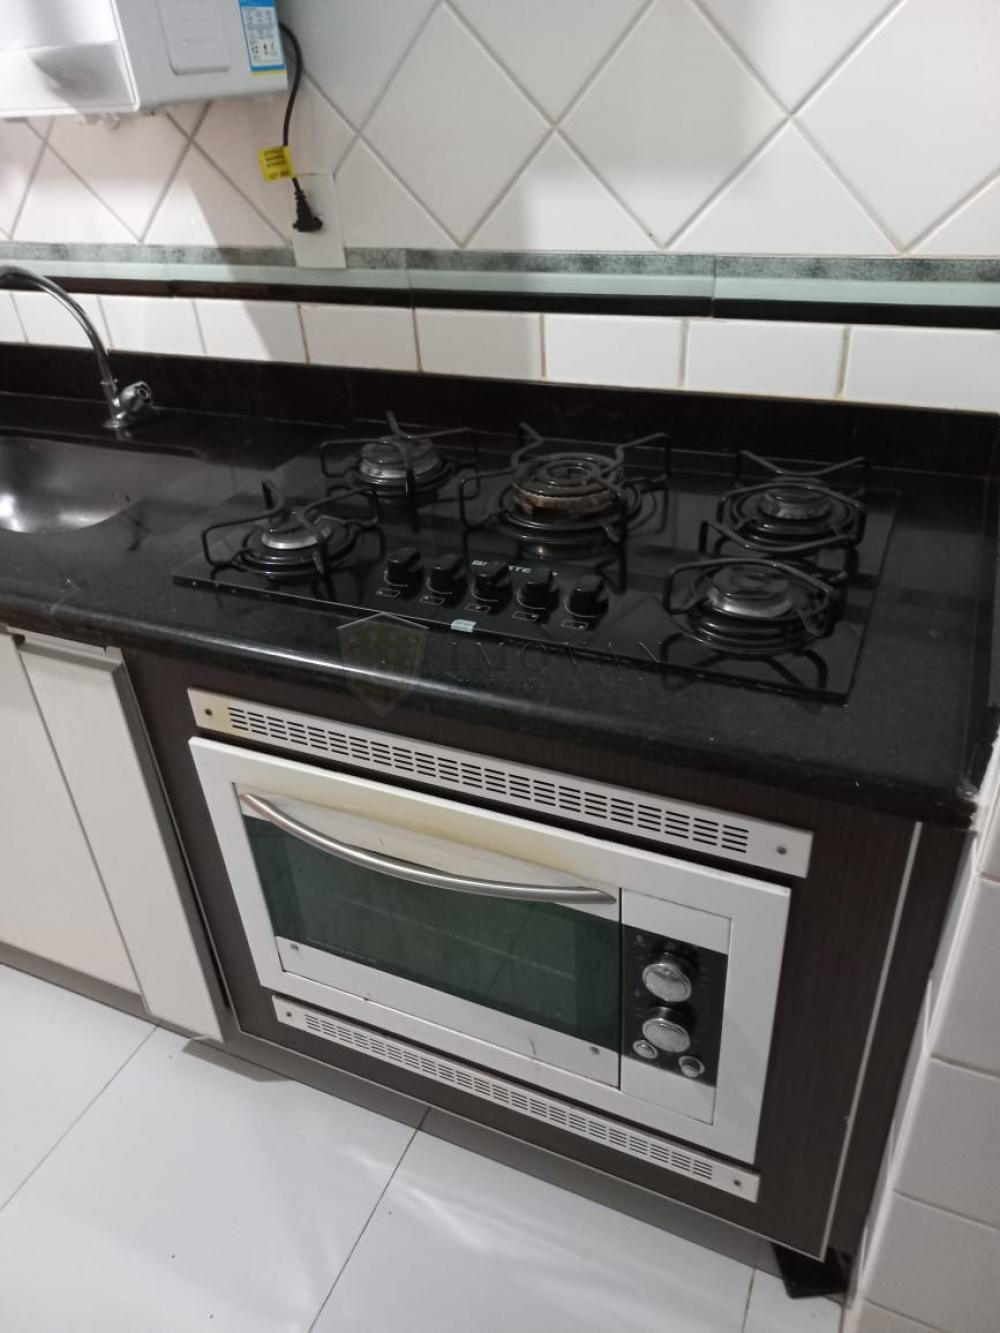 Comprar Apartamento / Padrão em Ribeirão Preto R$ 275.000,00 - Foto 13